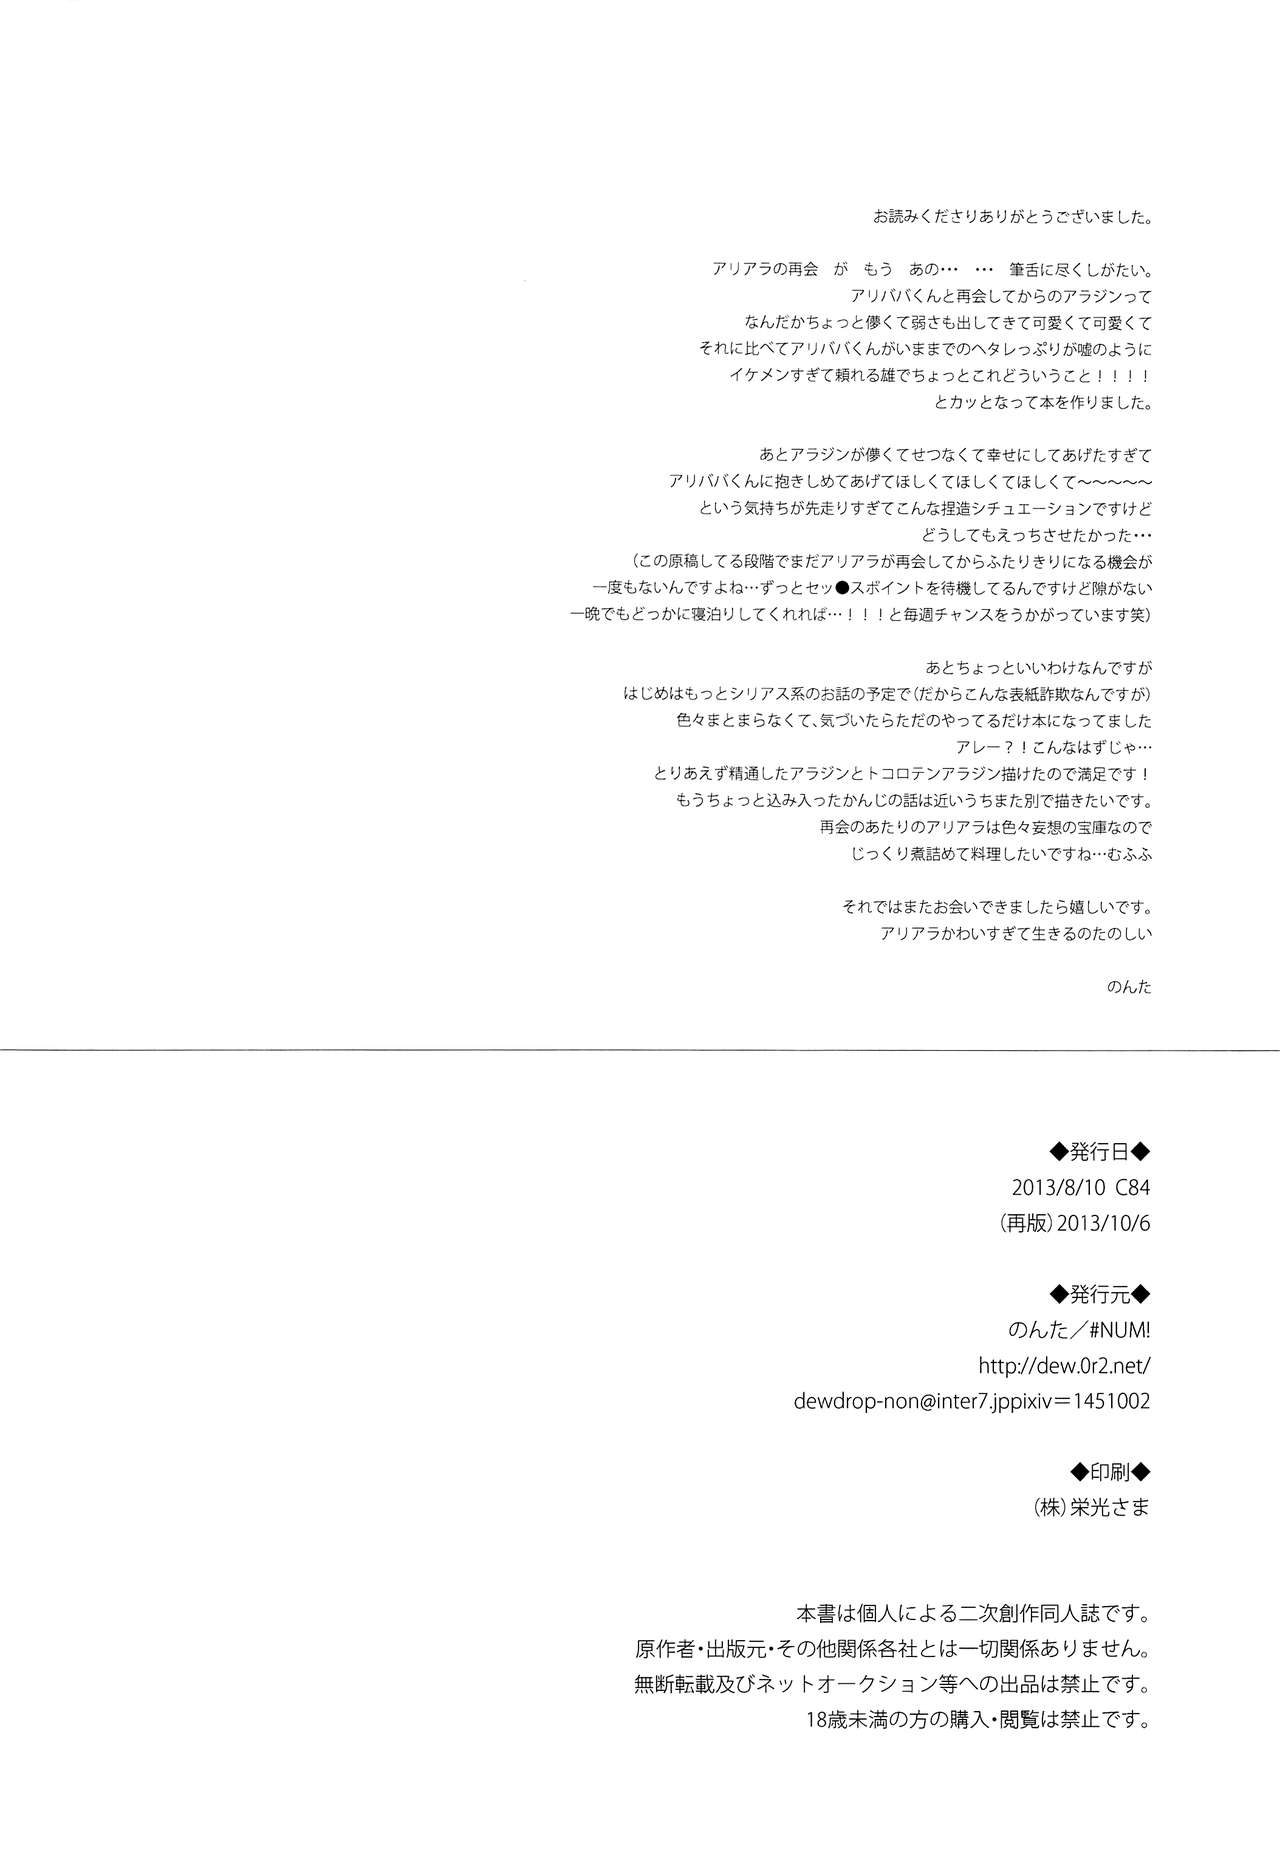 [#NUM! (のんた)] 夢待ちDistance (マギ) [2013年10月6日]